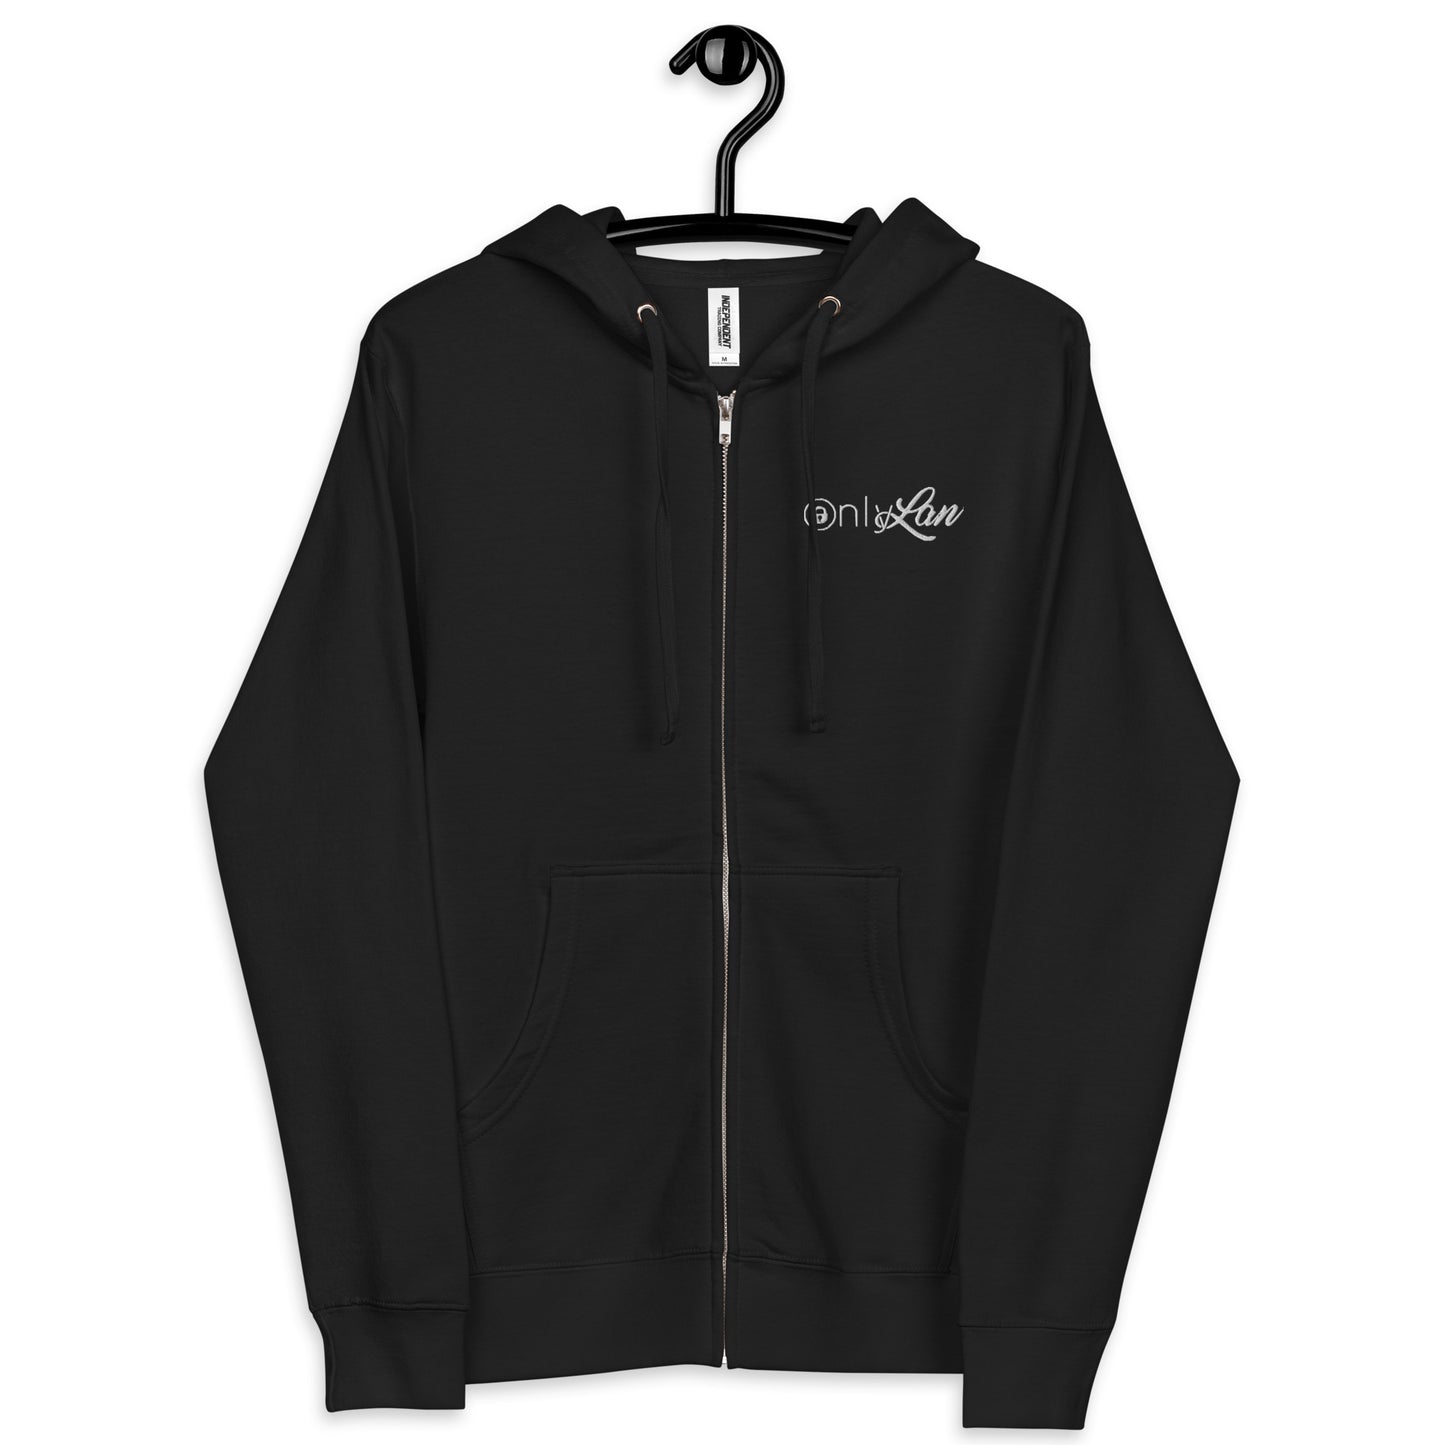 ONLY-LAN_zip up hoodie